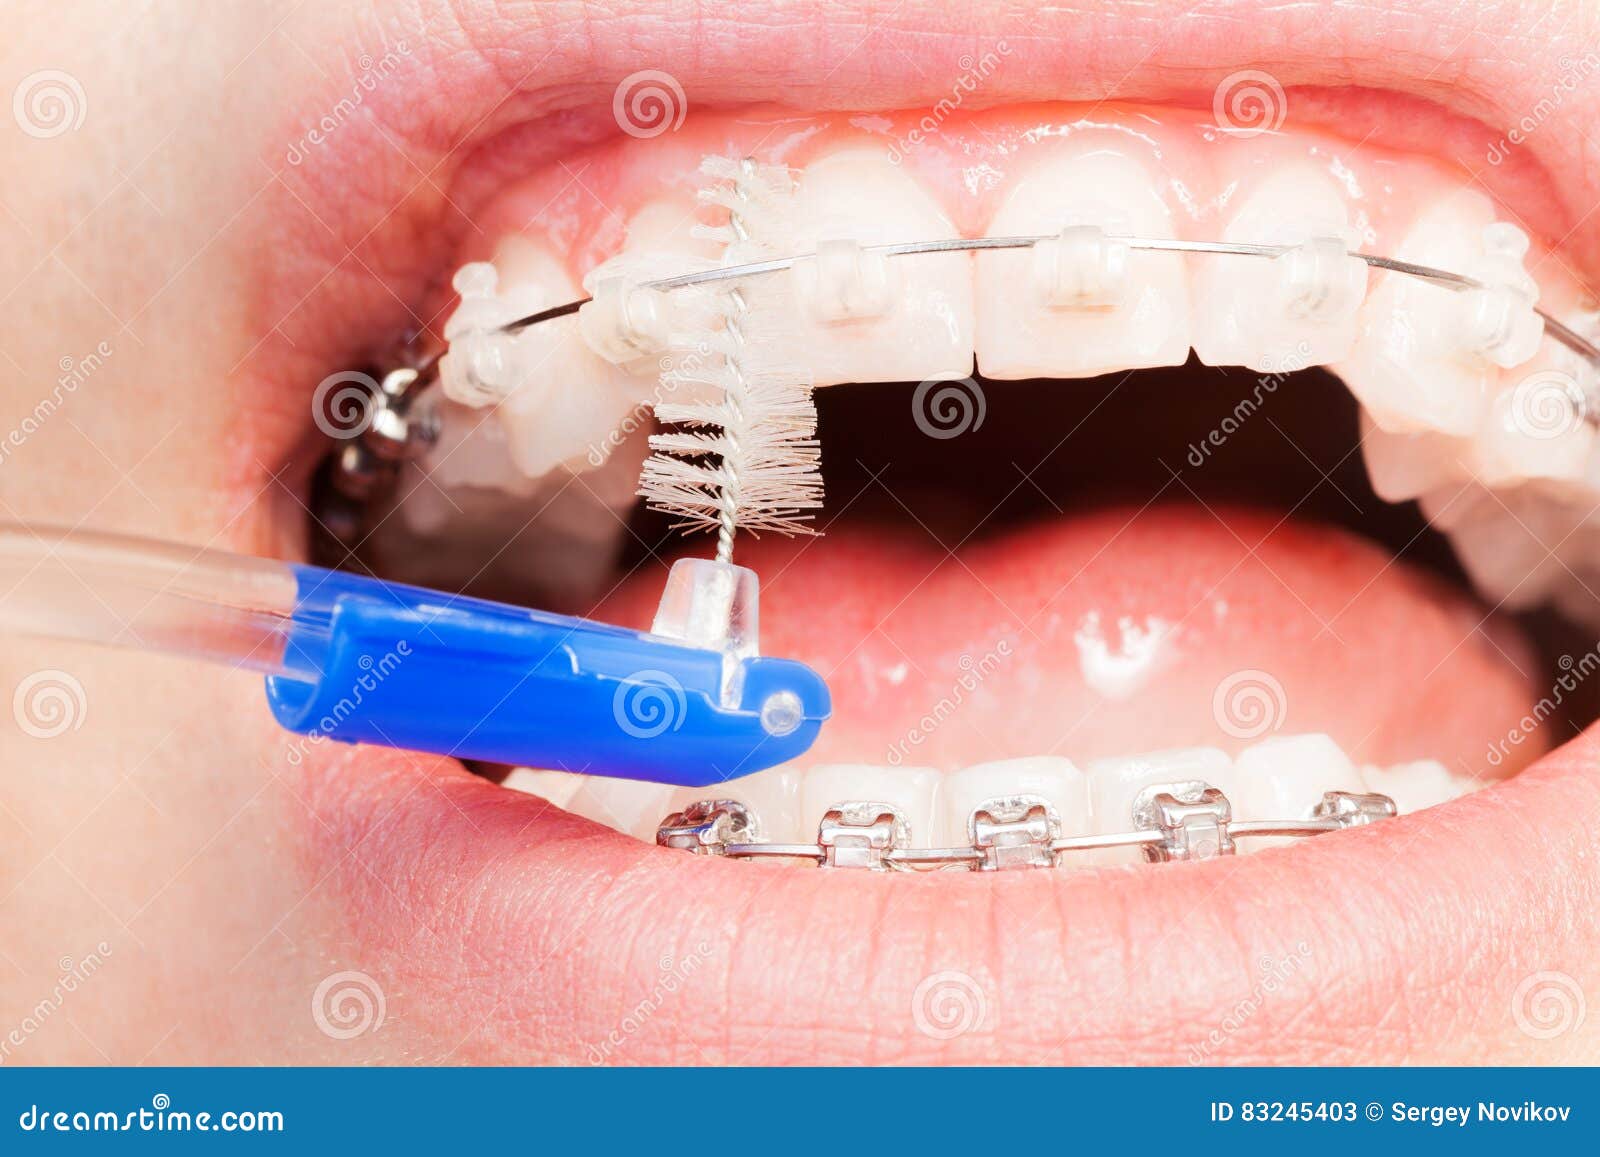 using an interdental brush for orthodontic braces